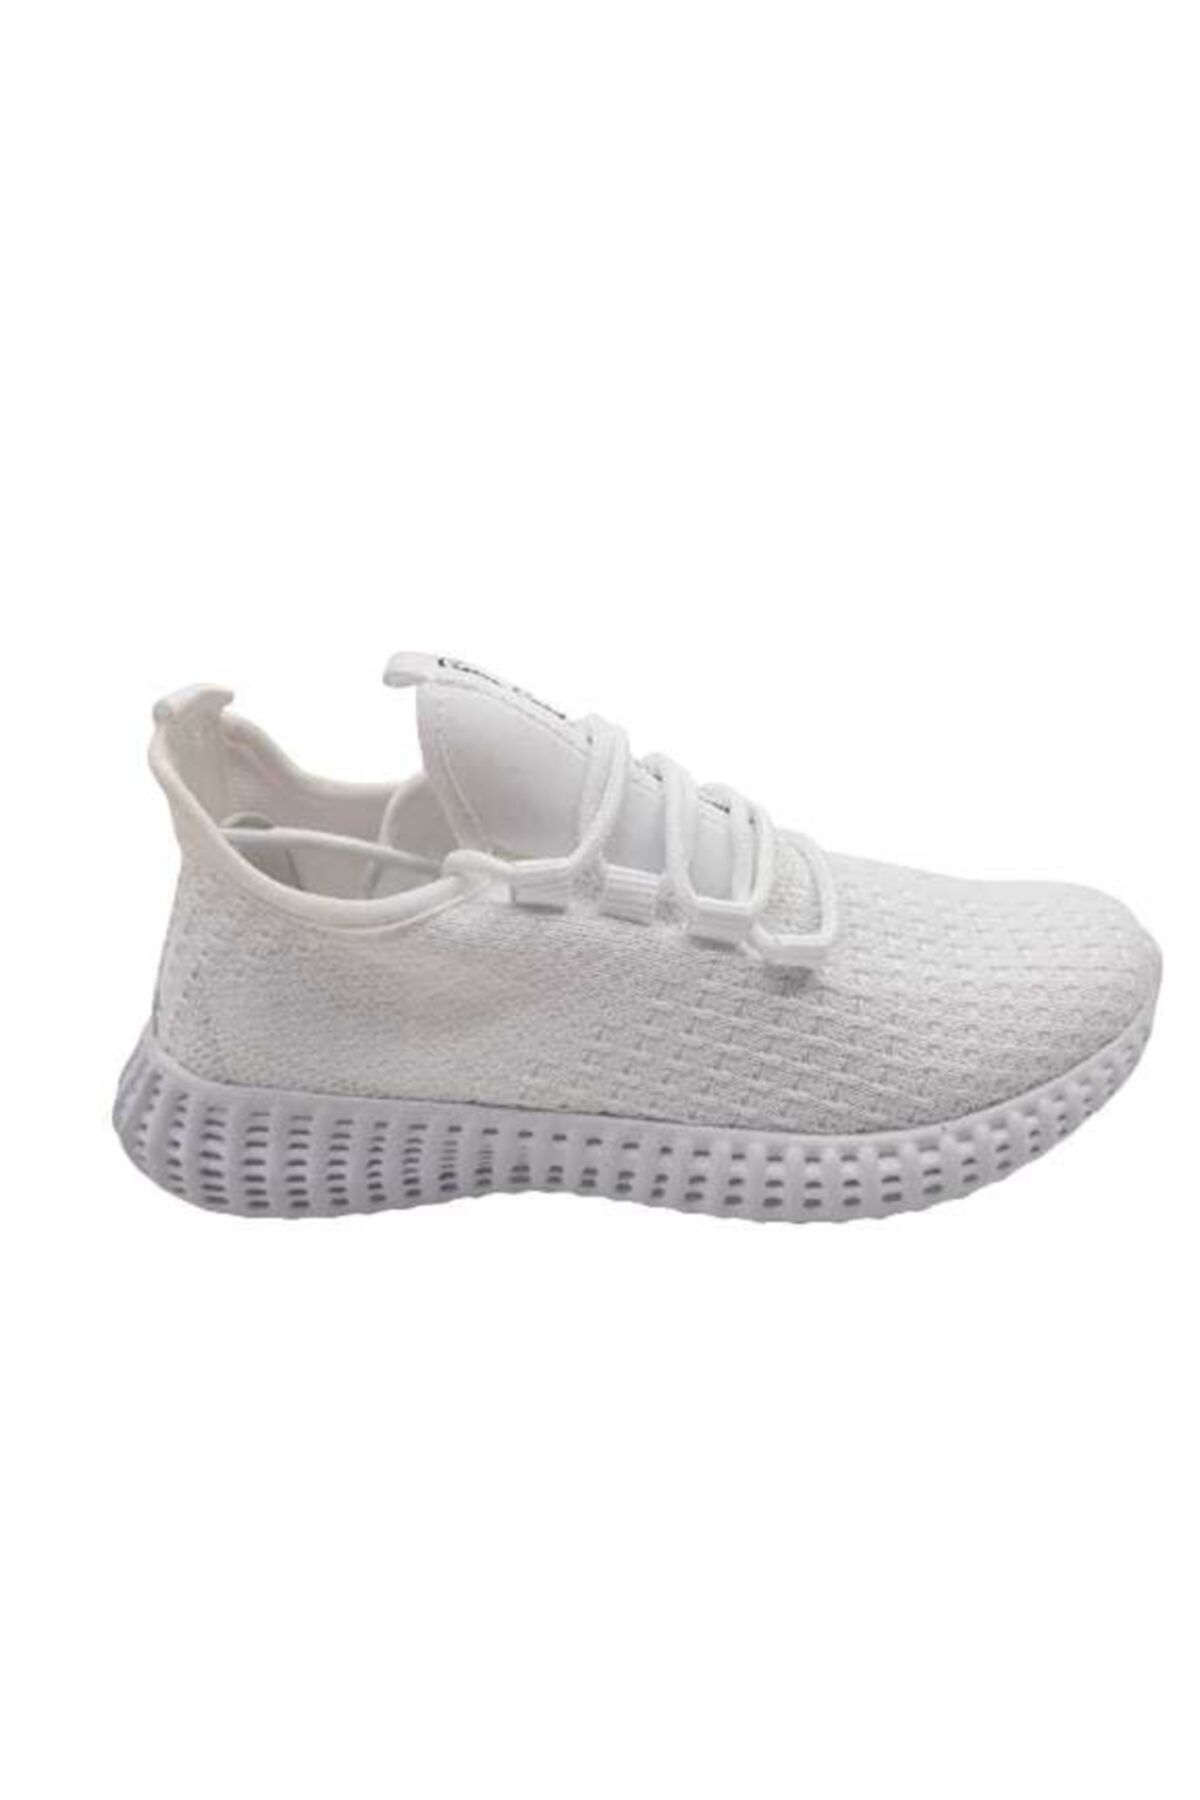 Pierre Cardin Kadın Sneakers Beyaz Yürüyüş Ayakkabısı Pc-30949